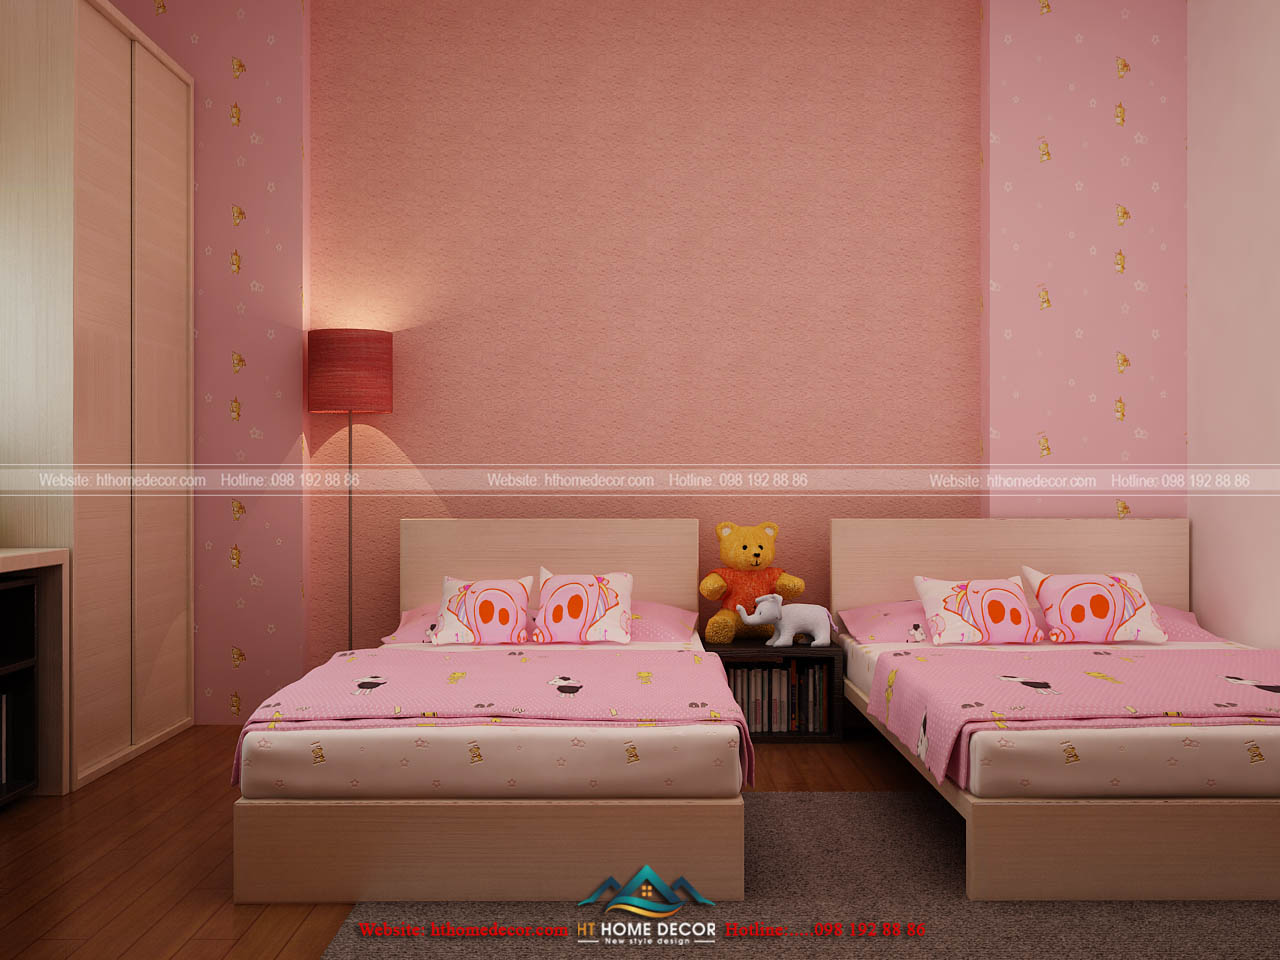 Ở một gian phòng khác, thiết kế nội thất đẹp tinh tế với gam màu hồng dịu dàng nữ tính. Thích hợp cho các bé gái.